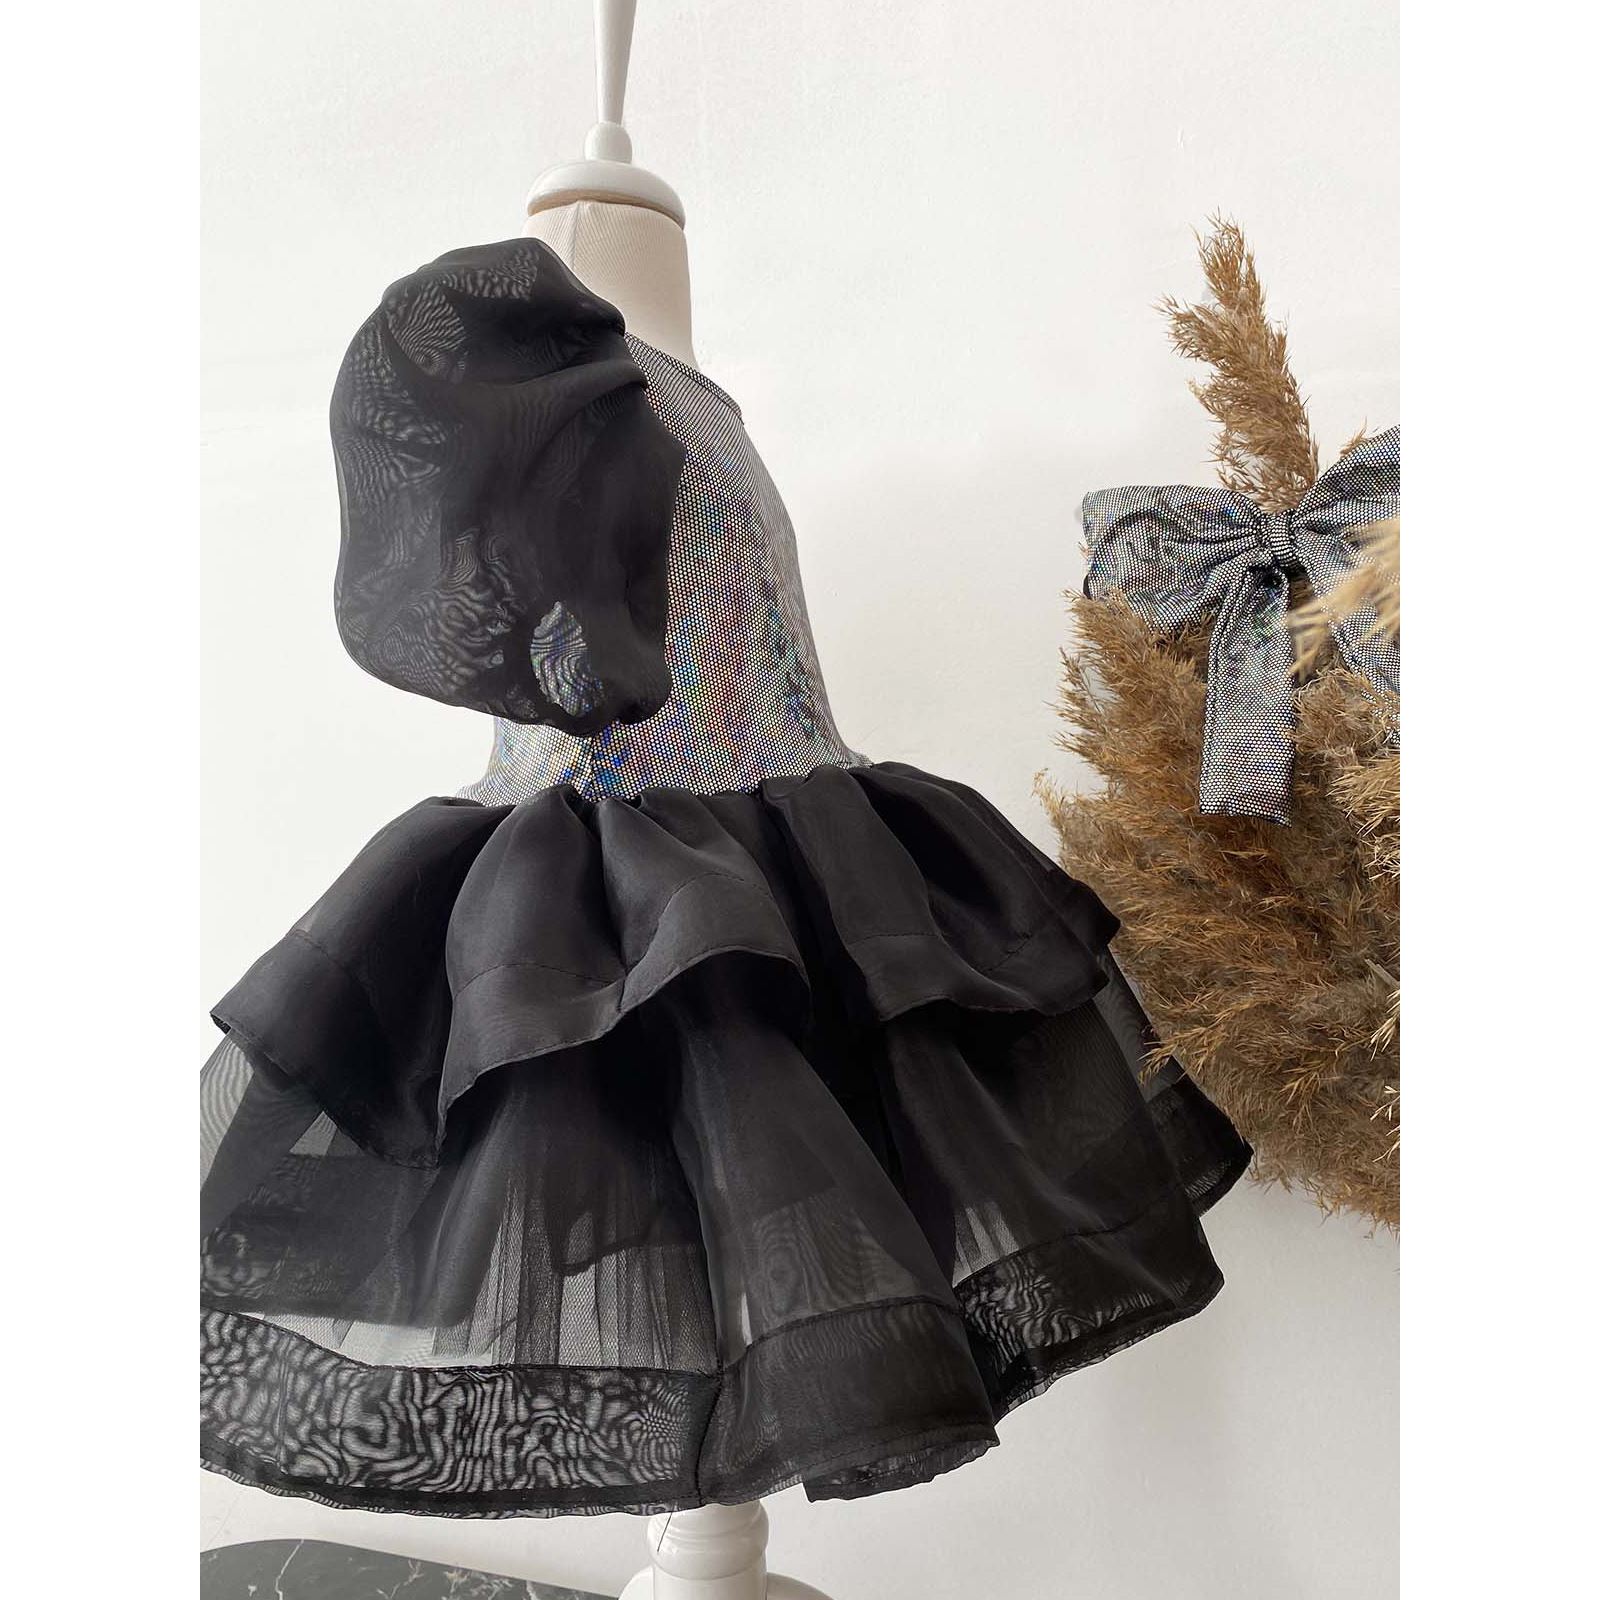 Shecco Babba Kız Çocuk Organze Abiye Elbise, Doğum Günü Abiye Elbise, Bandana 6-10 Yaş Abiye Siyah